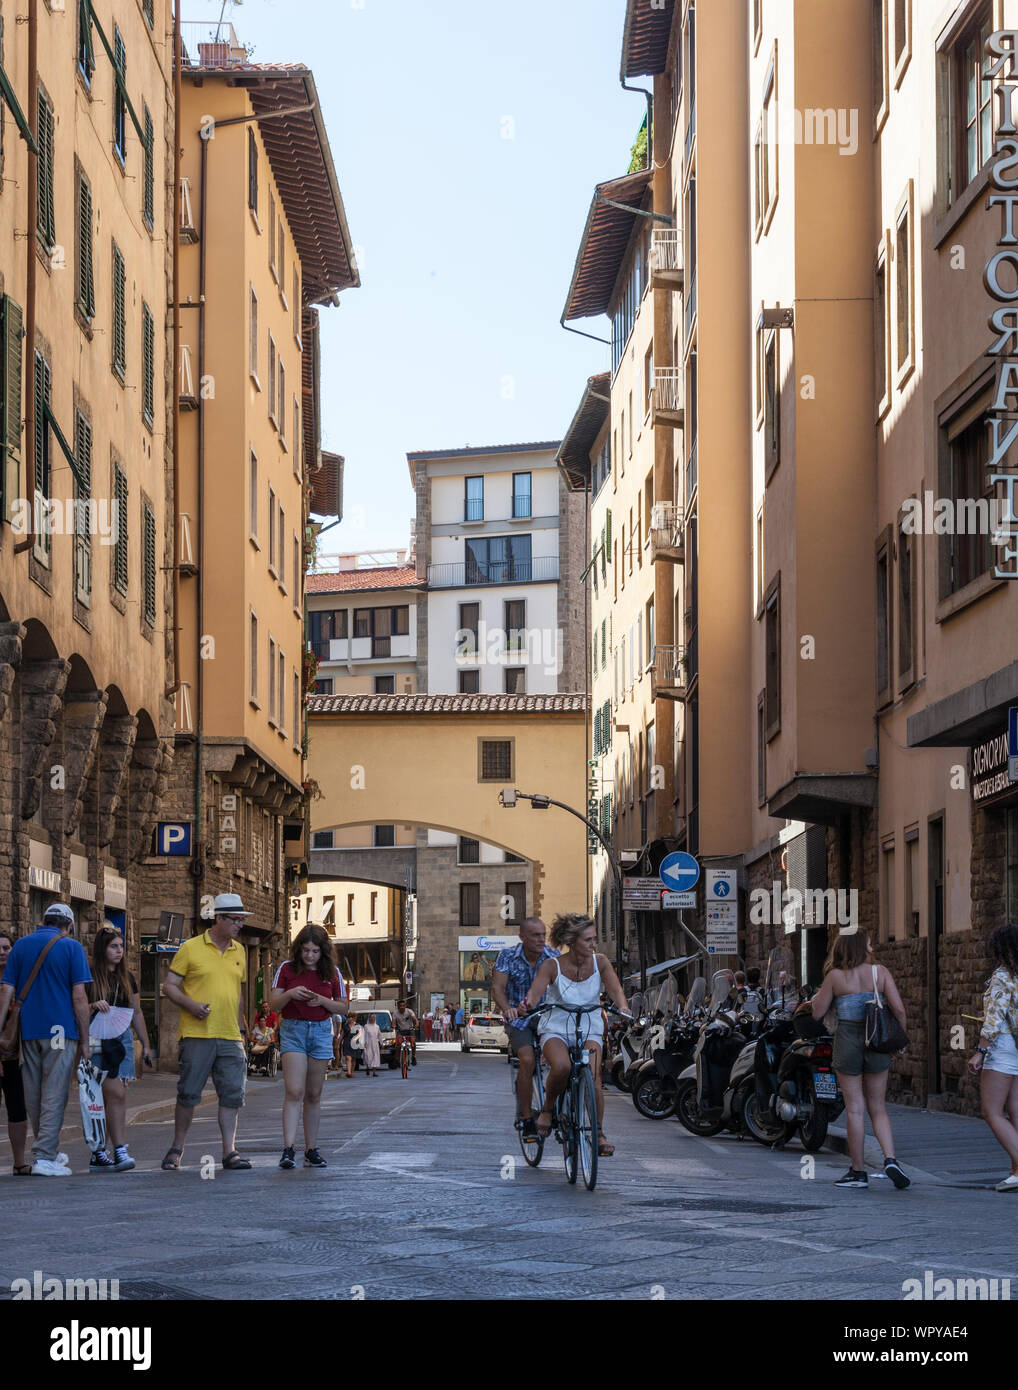 Scène de rue avec les piétons, vélos, voitures et motos, Piazza de Pitti, Florence, Italie Banque D'Images